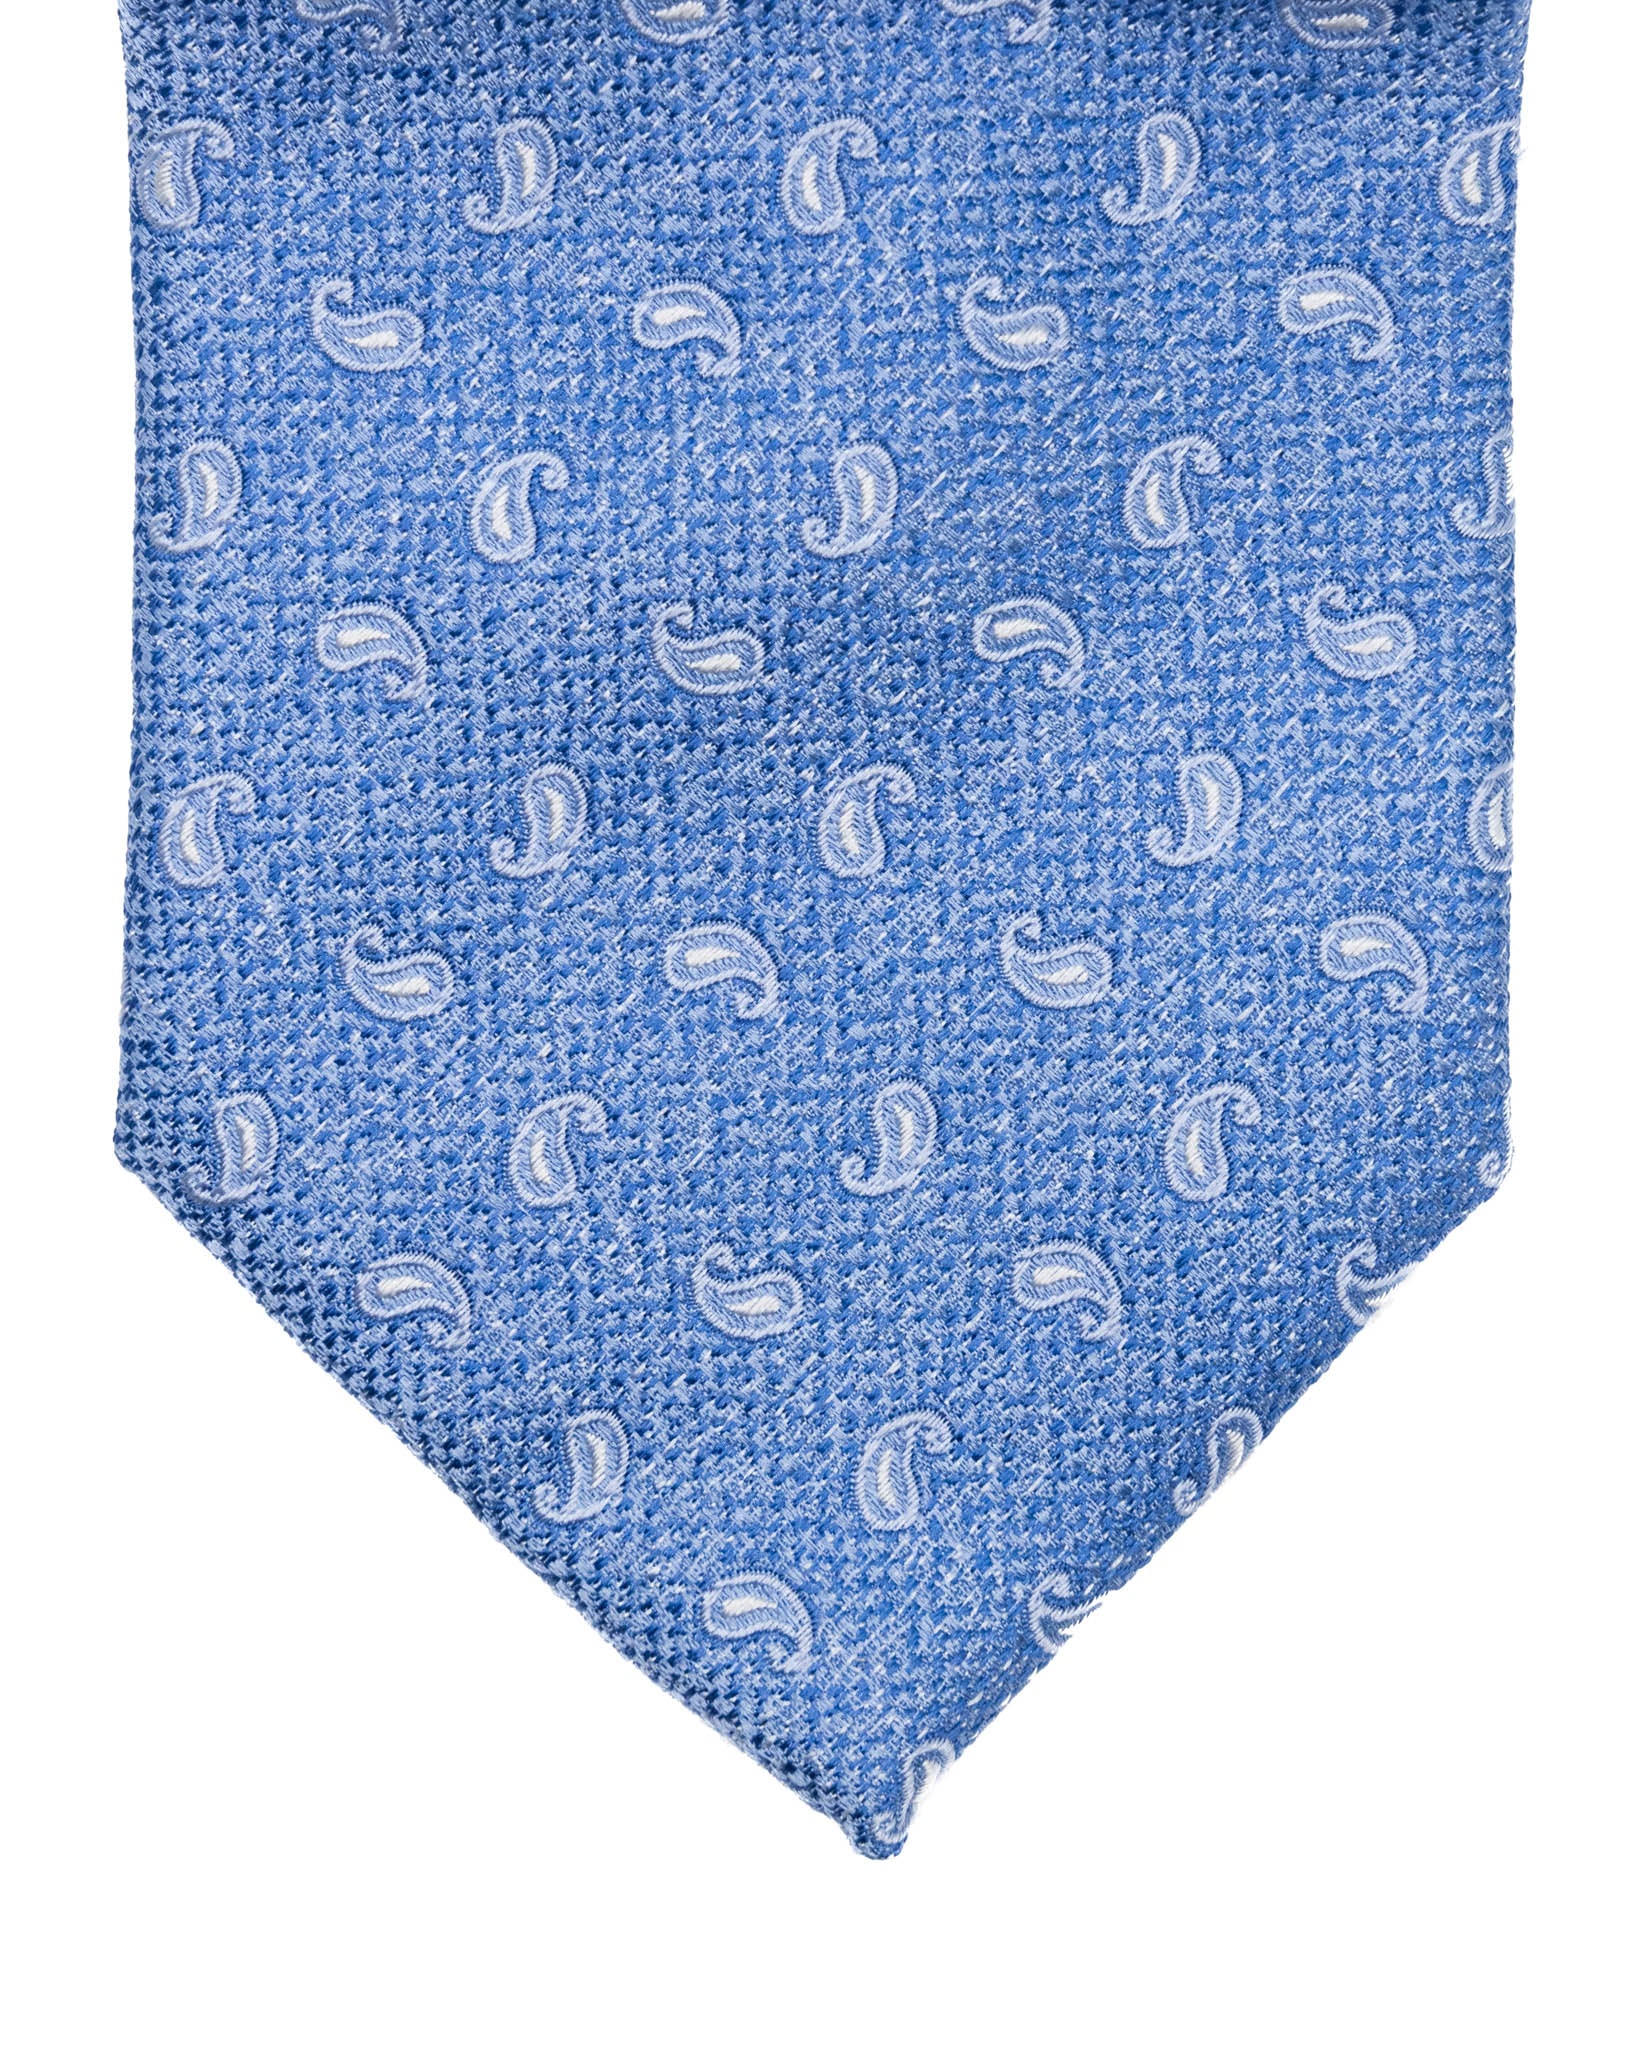 Cravatta - in seta azzurra paisley in rilievo